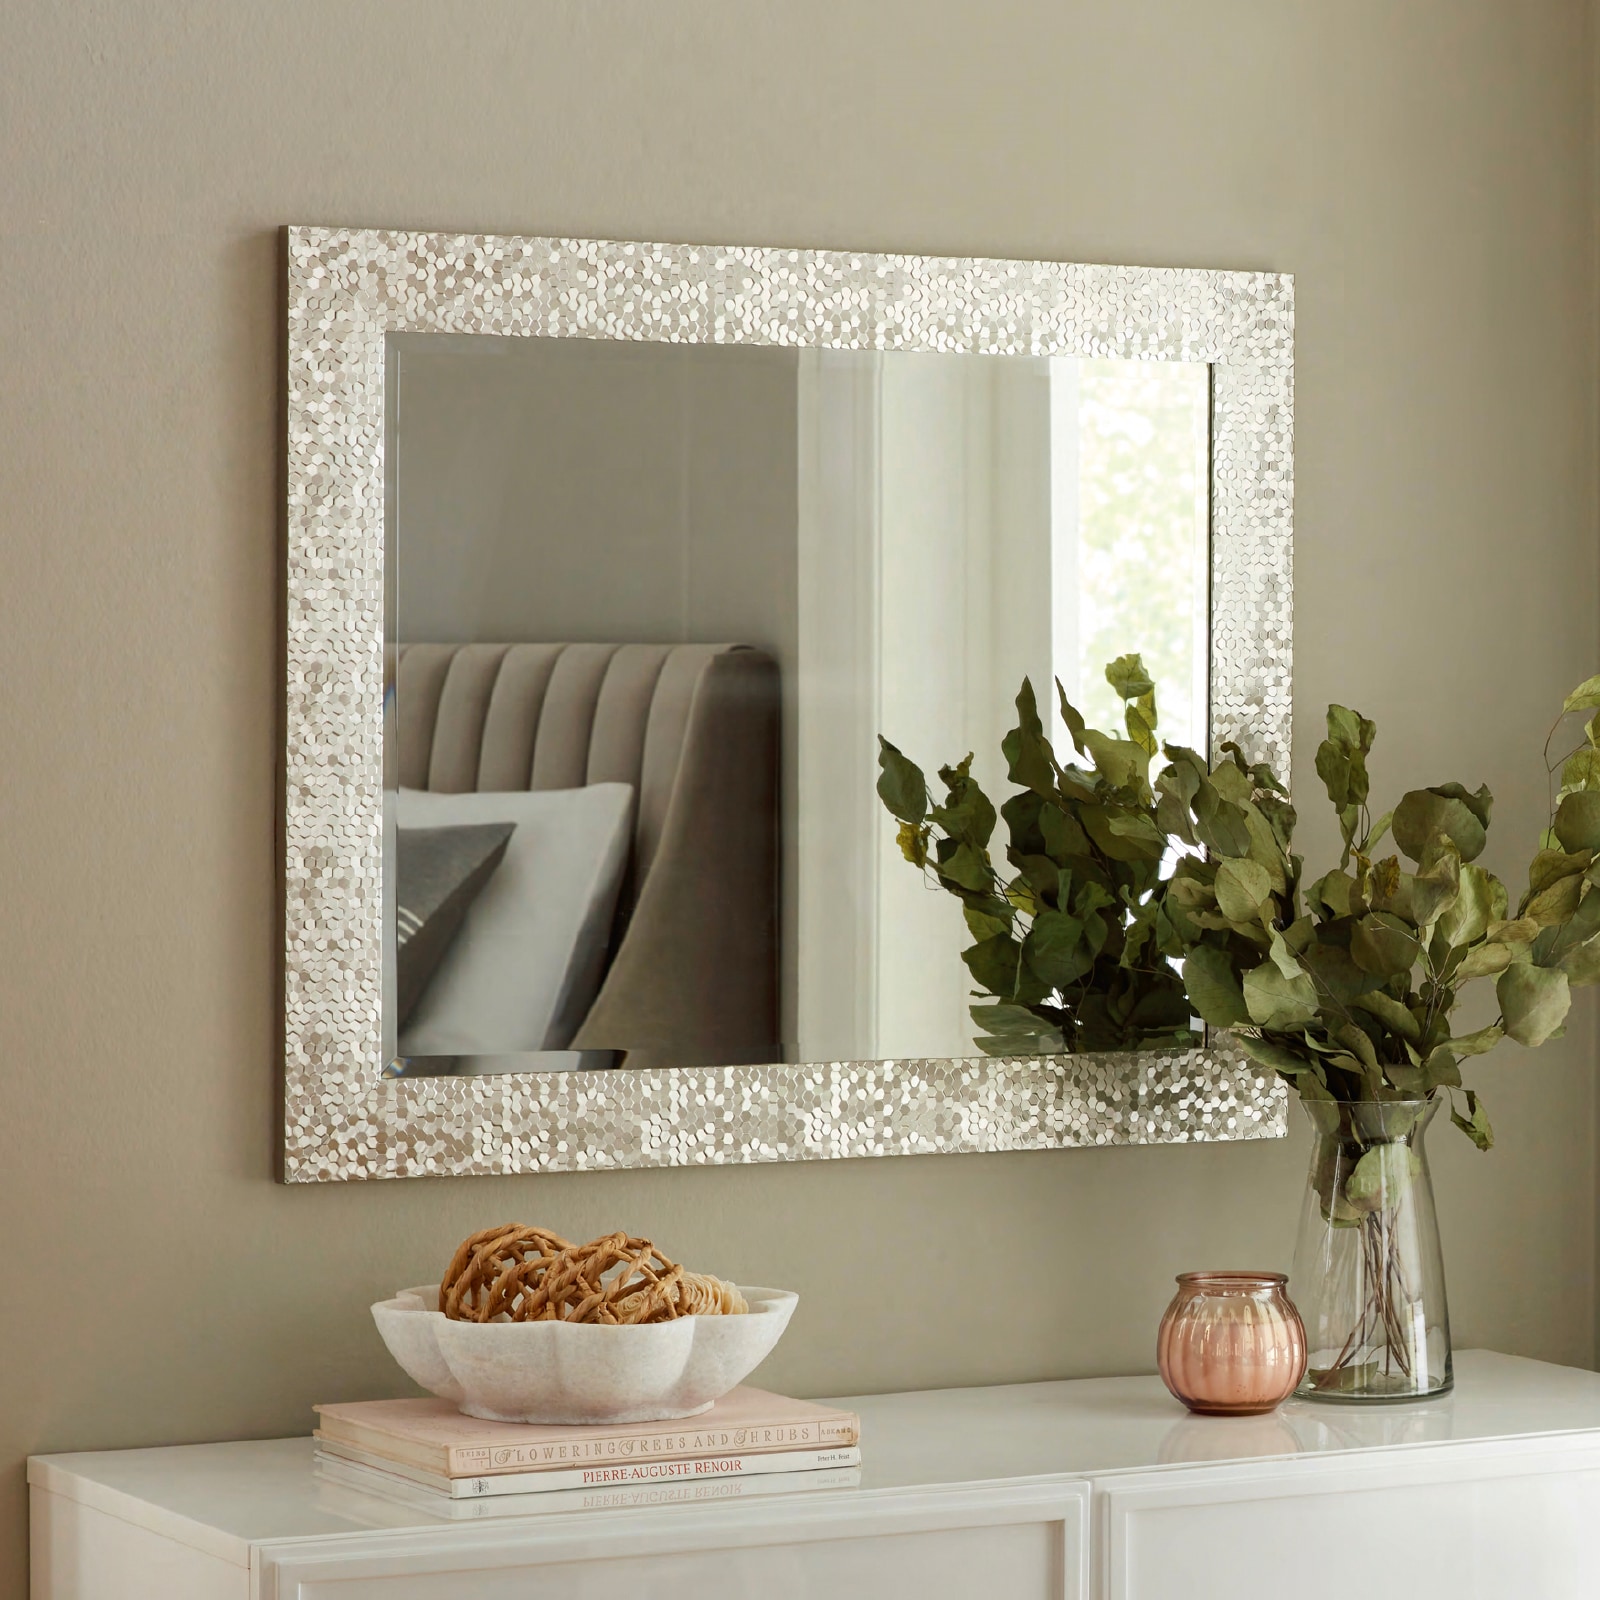 Allen + Roth Glitzy Framed Wall Mirror - Silver - 27 x 33 in